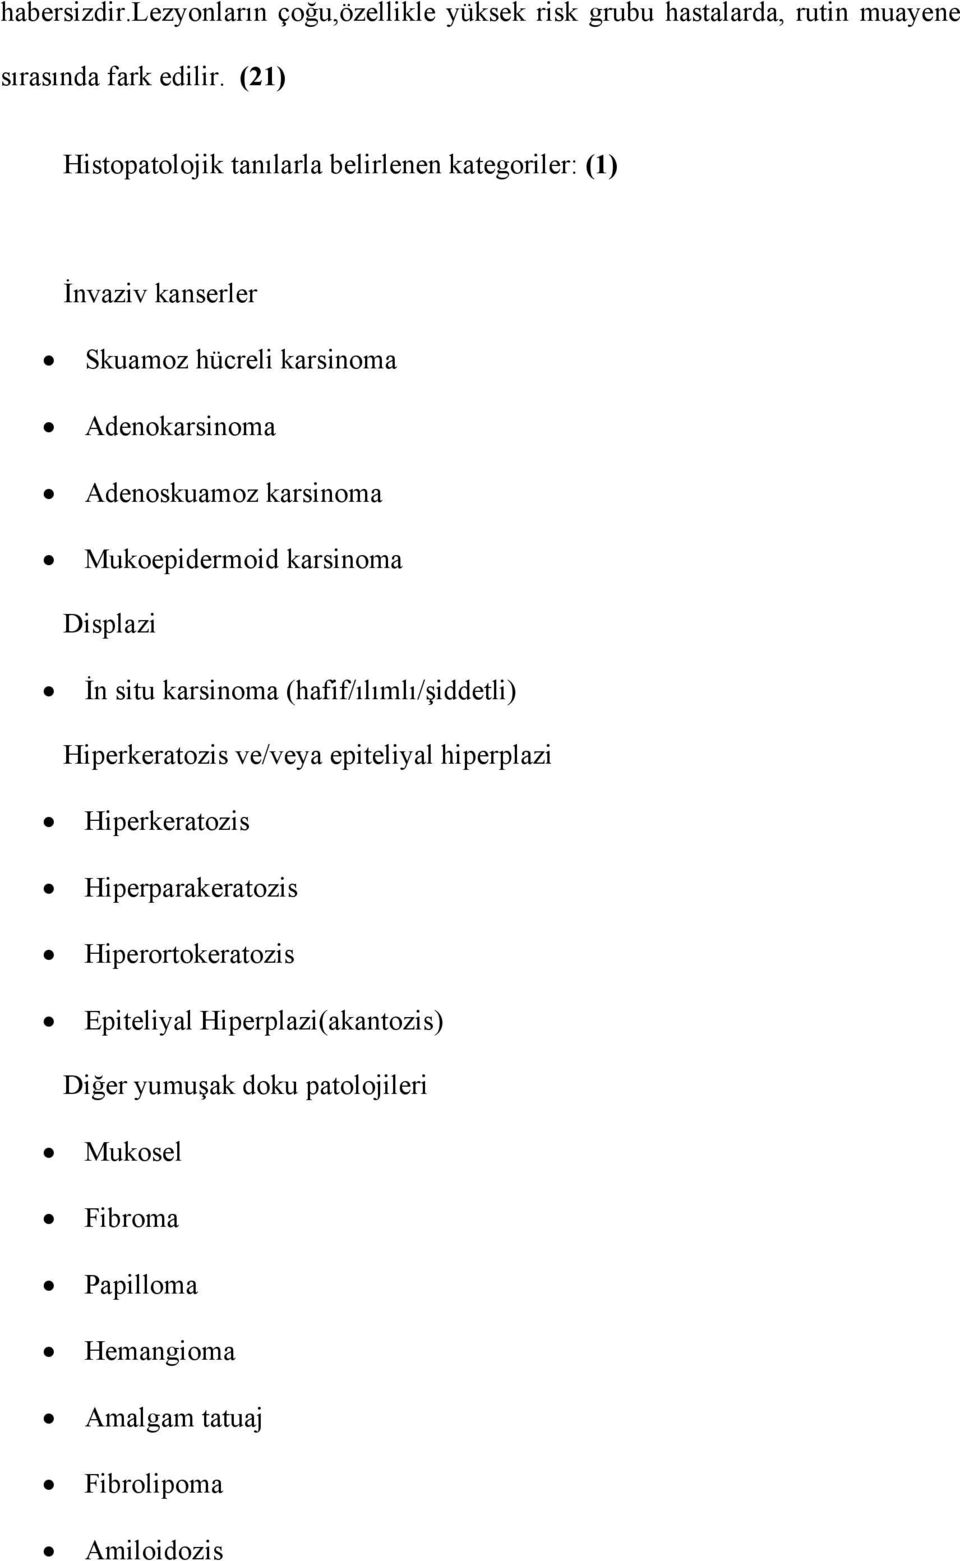 Mukoepidermoid karsinoma Displazi İn situ karsinoma (hafif/ılımlı/şiddetli) Hiperkeratozis ve/veya epiteliyal hiperplazi Hiperkeratozis